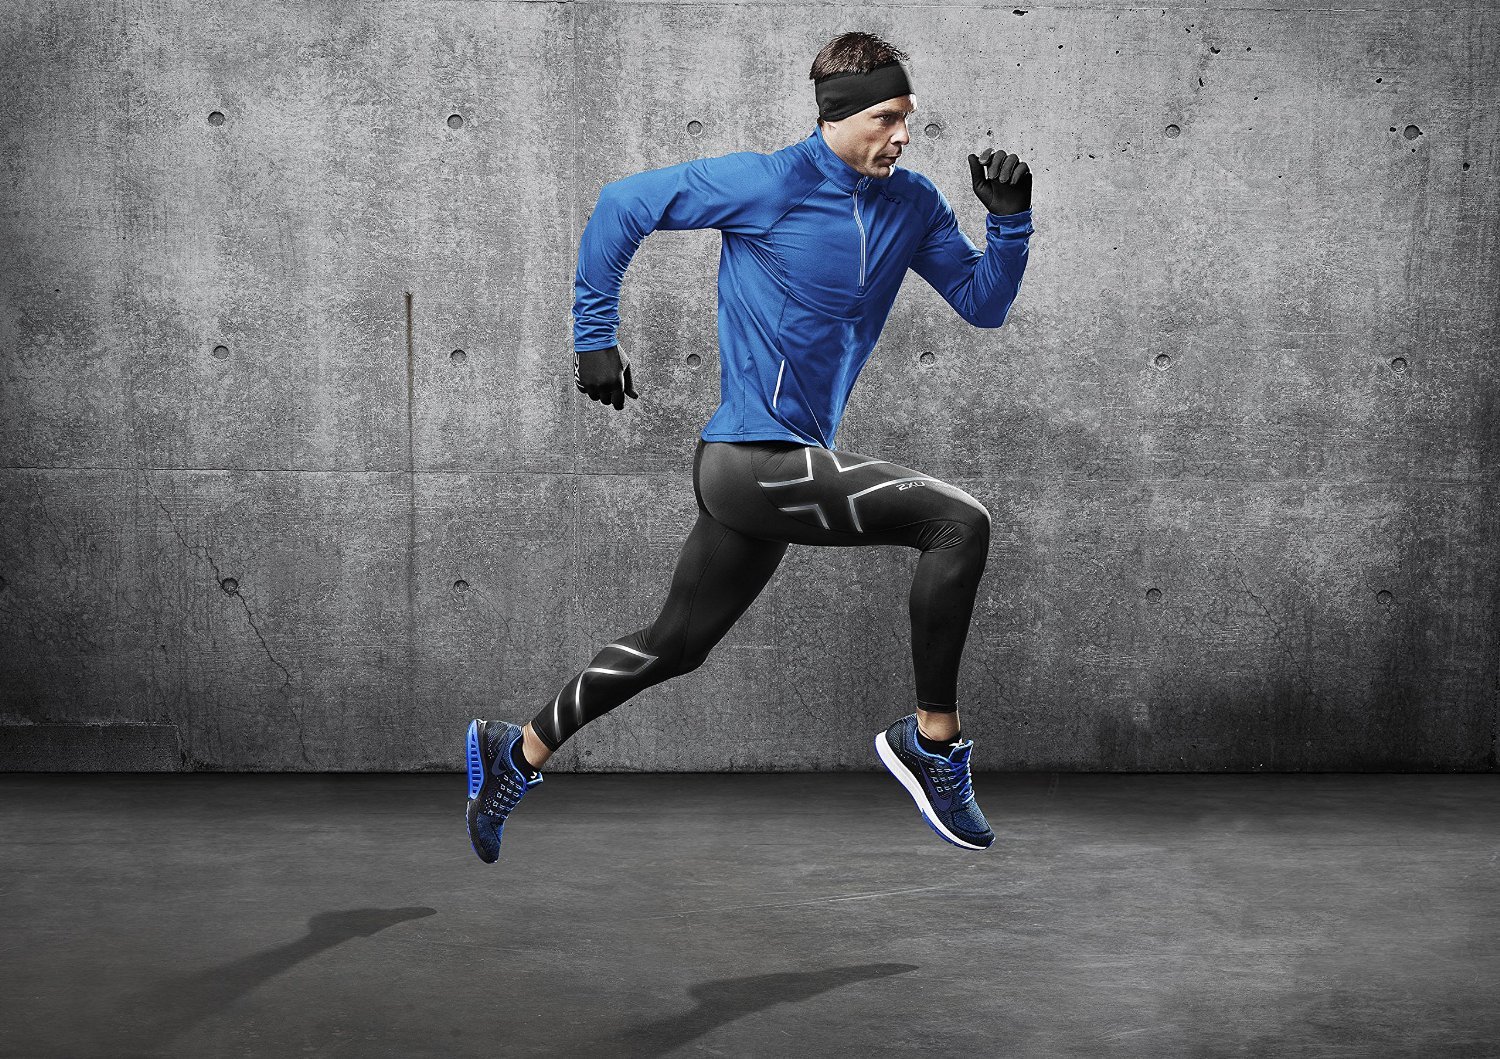 Run product. Sportswear Nike men. Реклама спортивной одежды. Спортсмены в движении. Реклама мужской спортивной одежды.